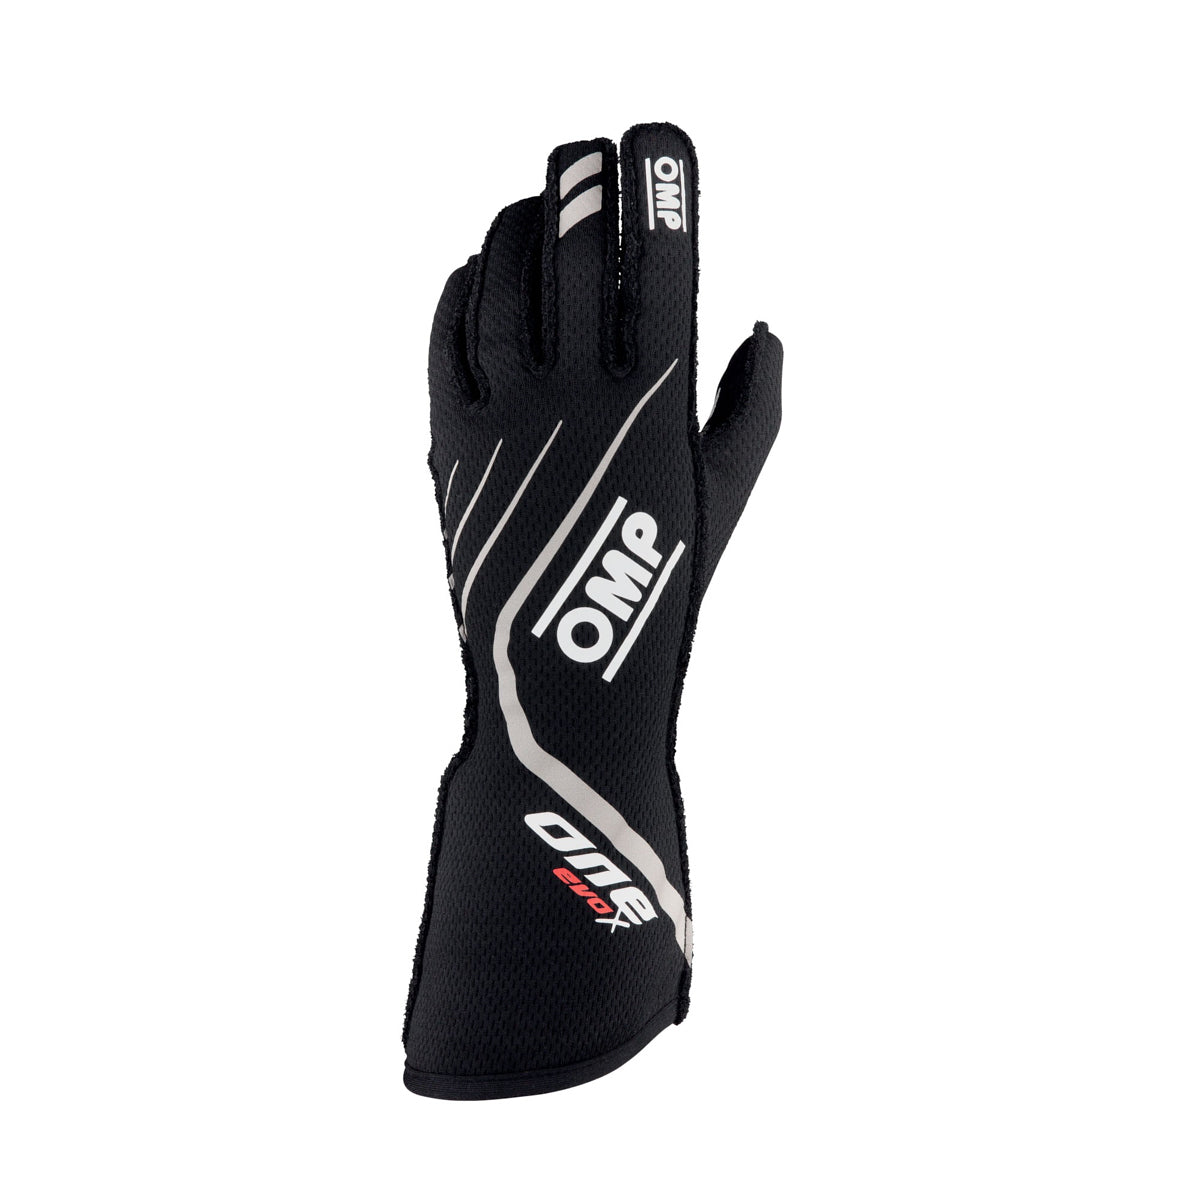 One EVO X Gloves Black Size Medium